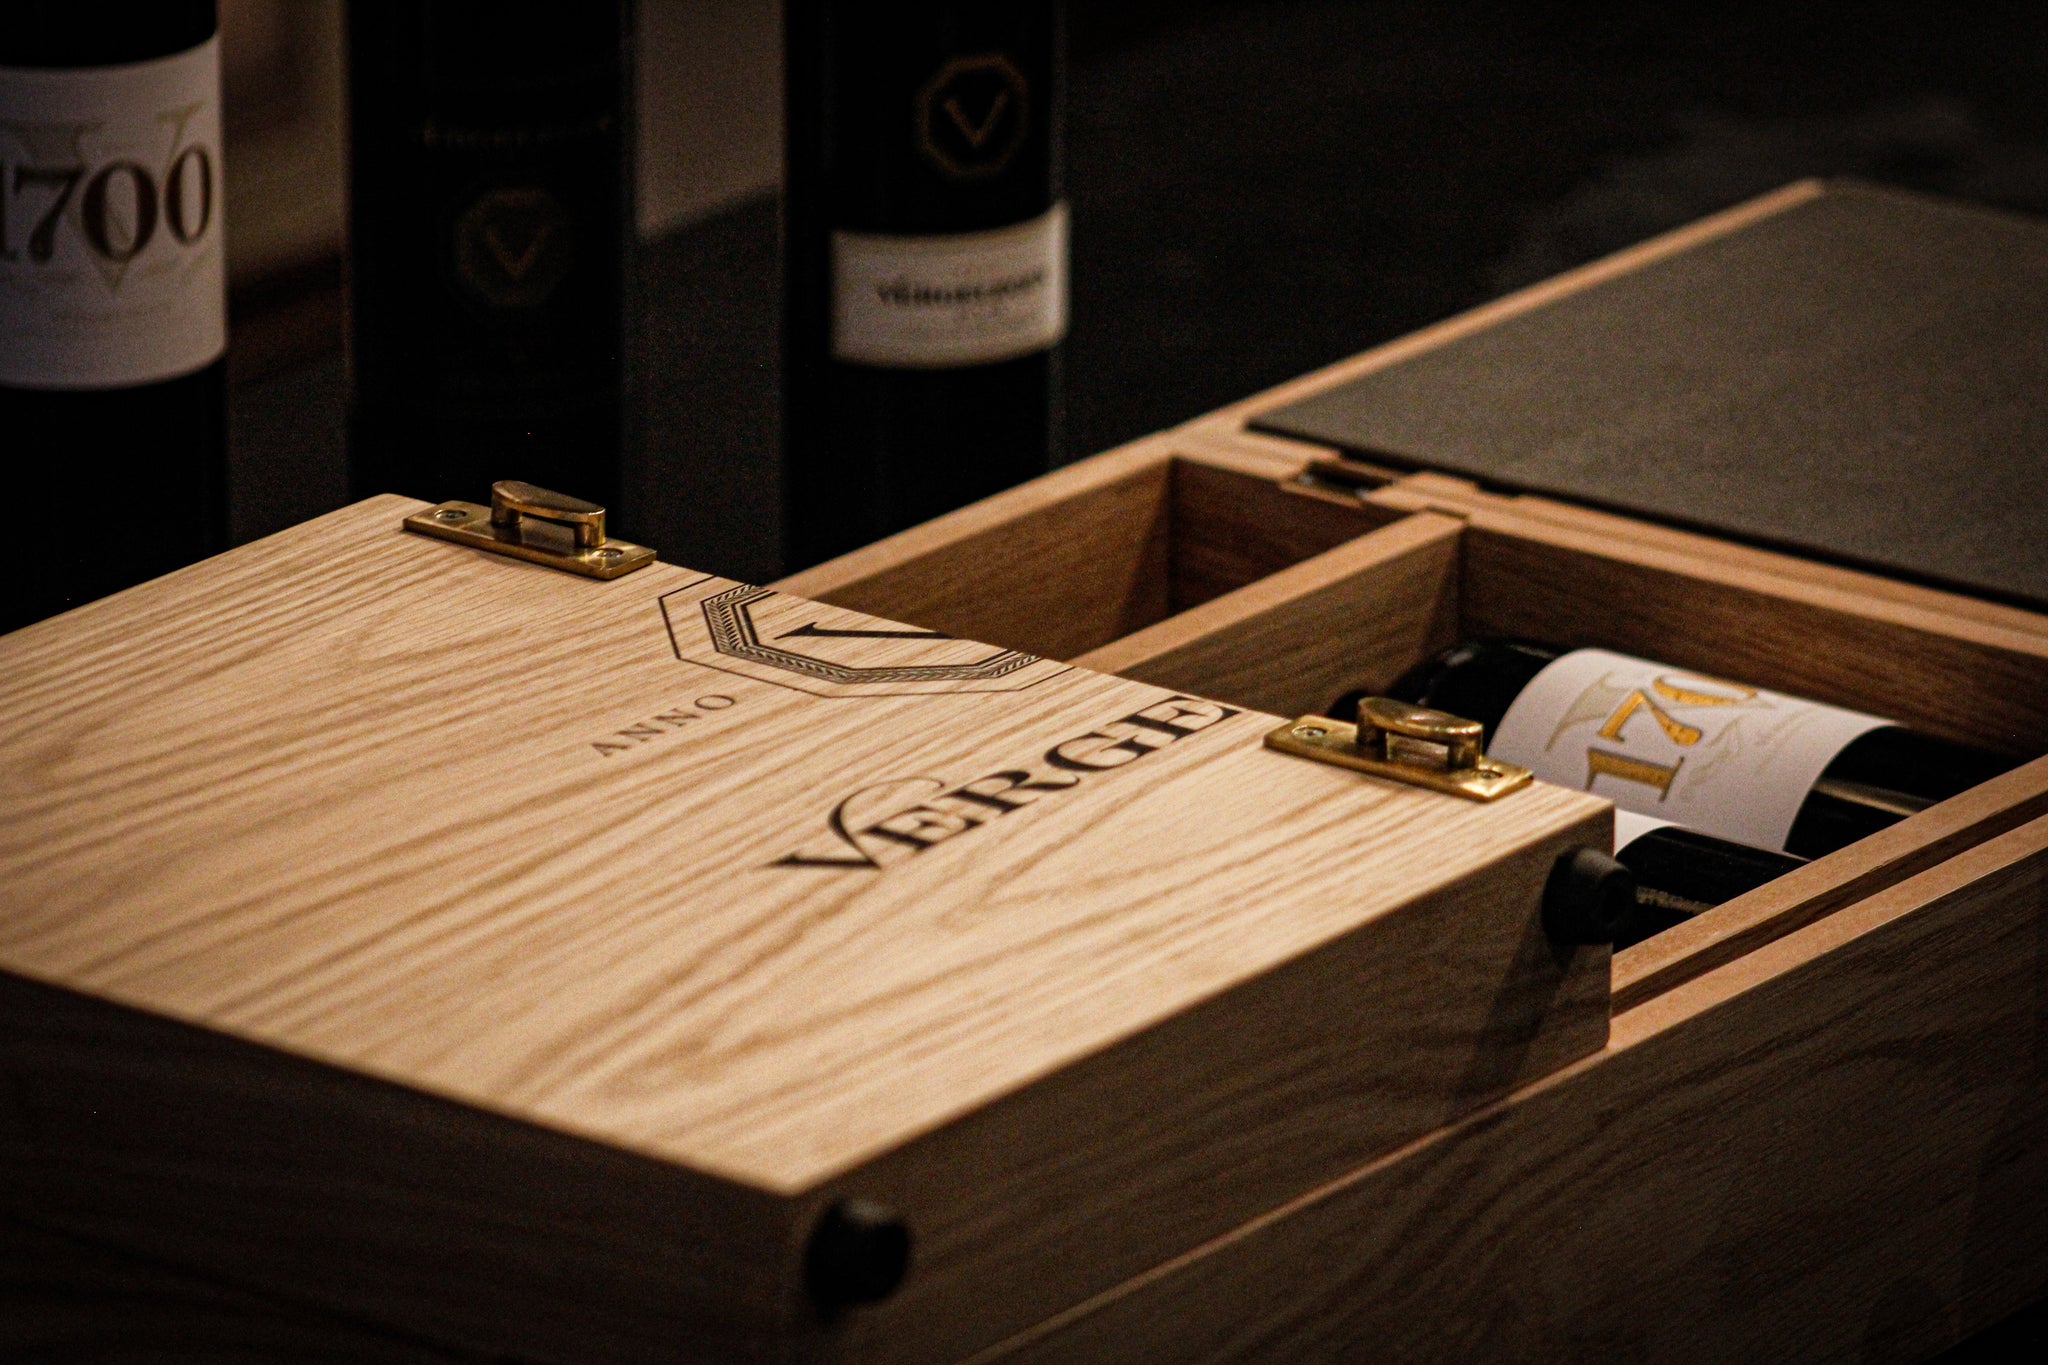 Vergelegen V1700 (2015) - Collectors Box and 6 Bottles of V1700